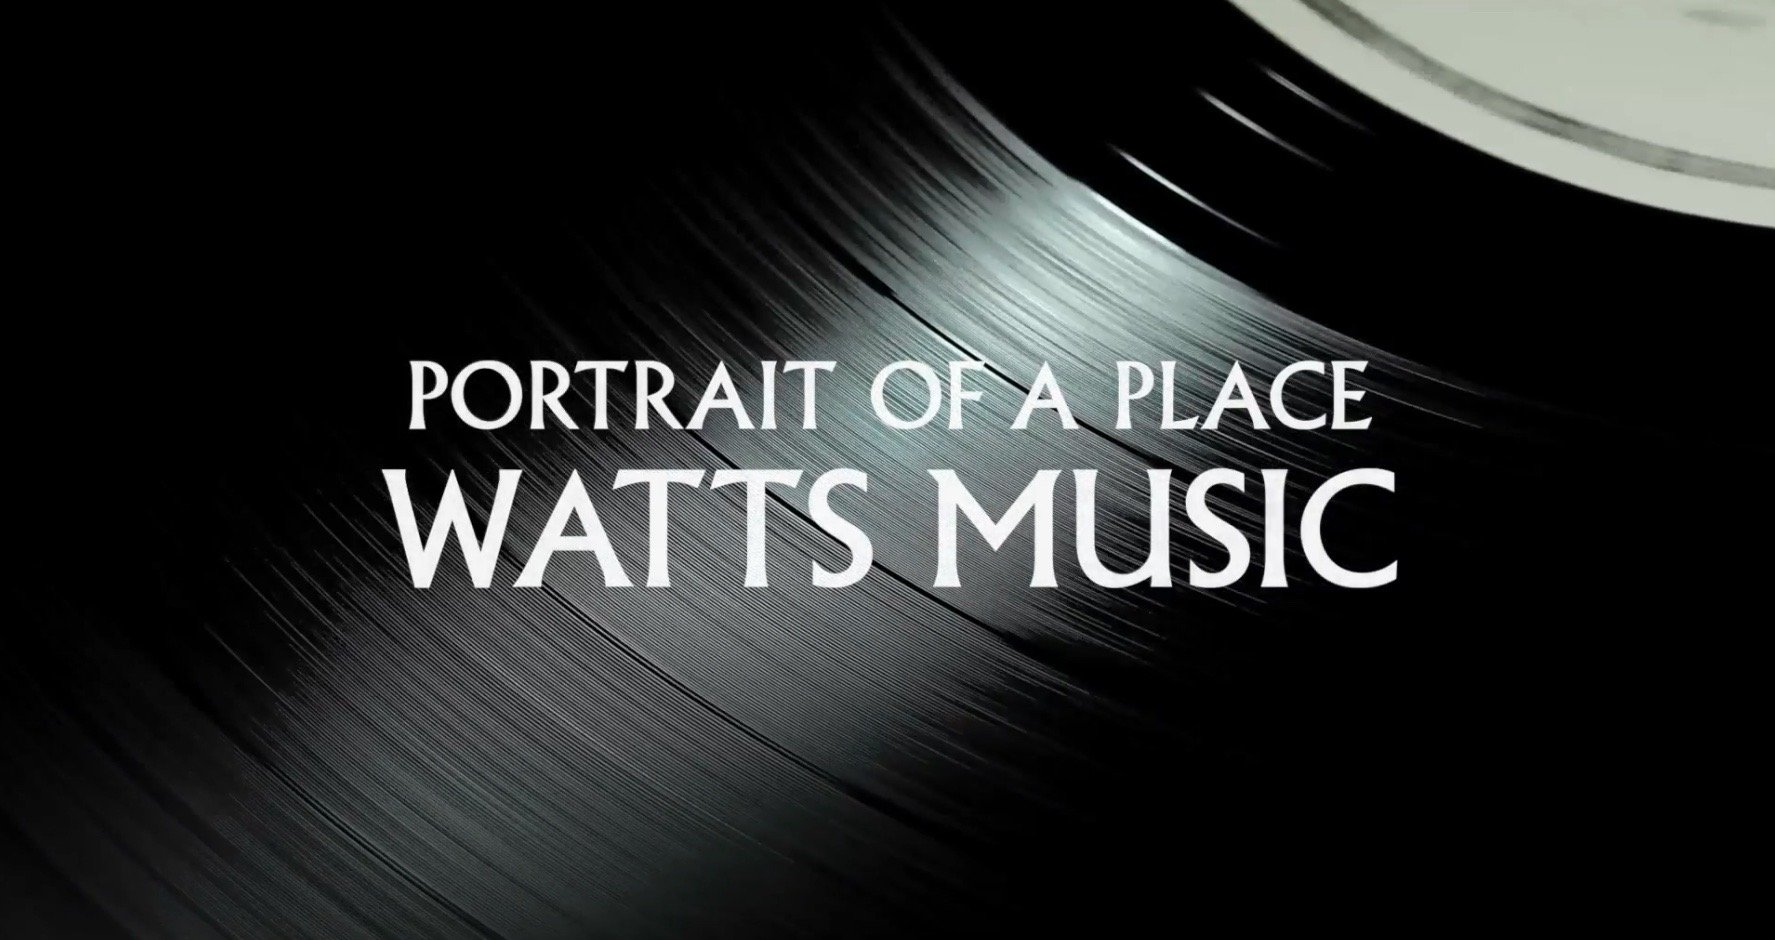 Watts Music Documentary